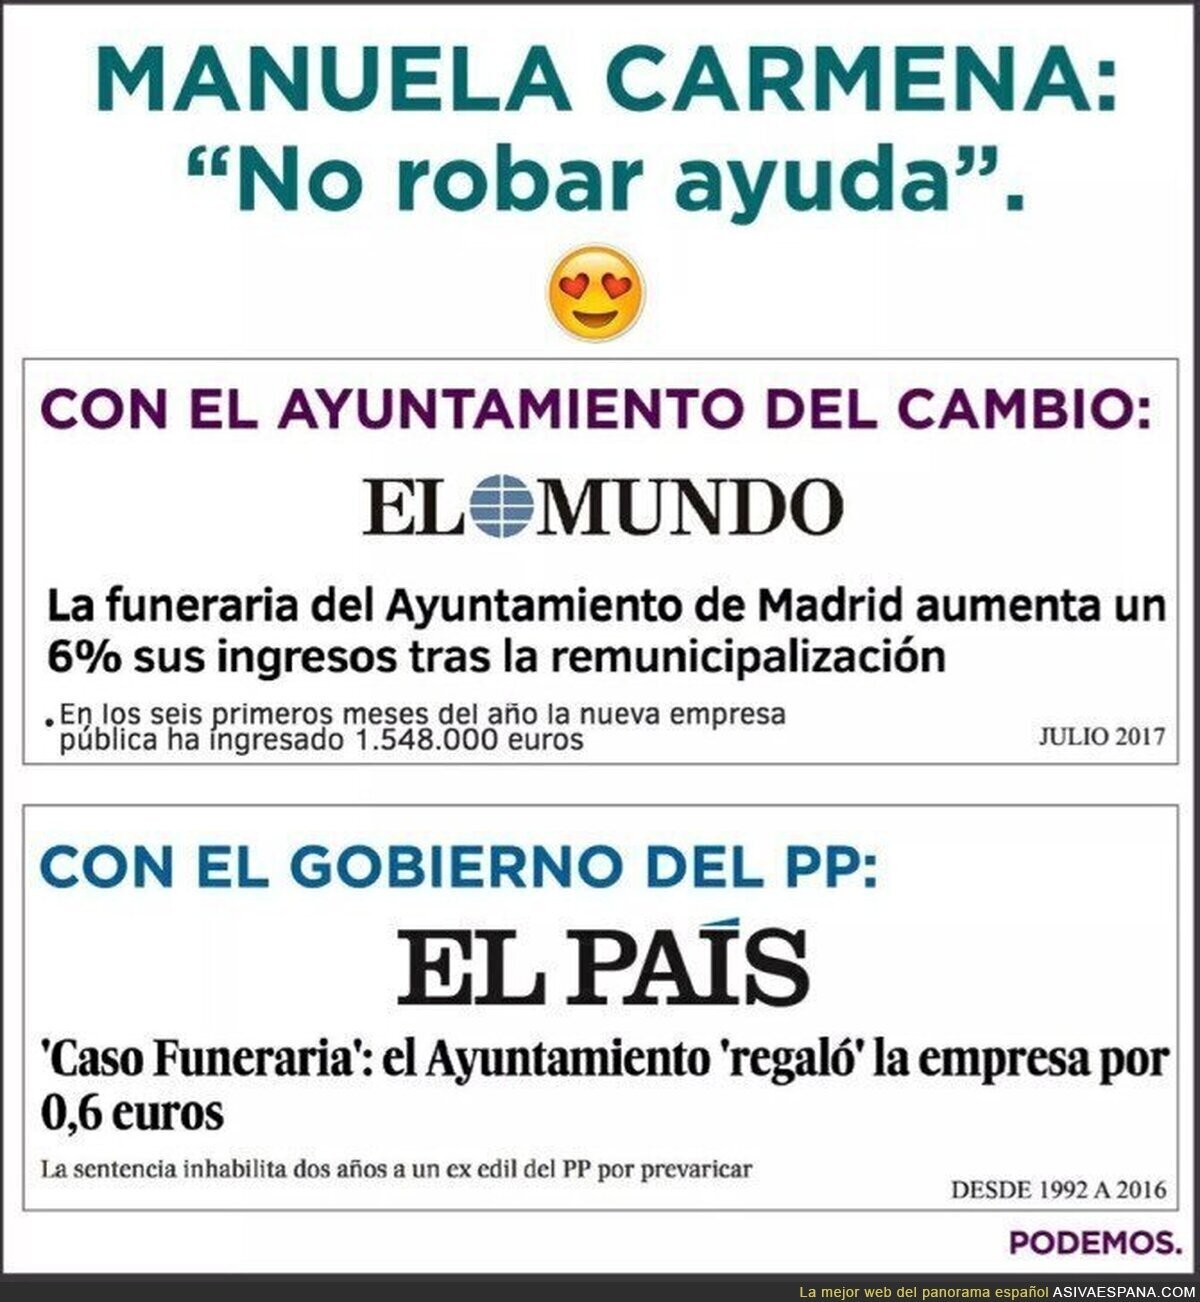 La diferencia en el cementerio de Madrid cuando gobierna el PP o Podemos